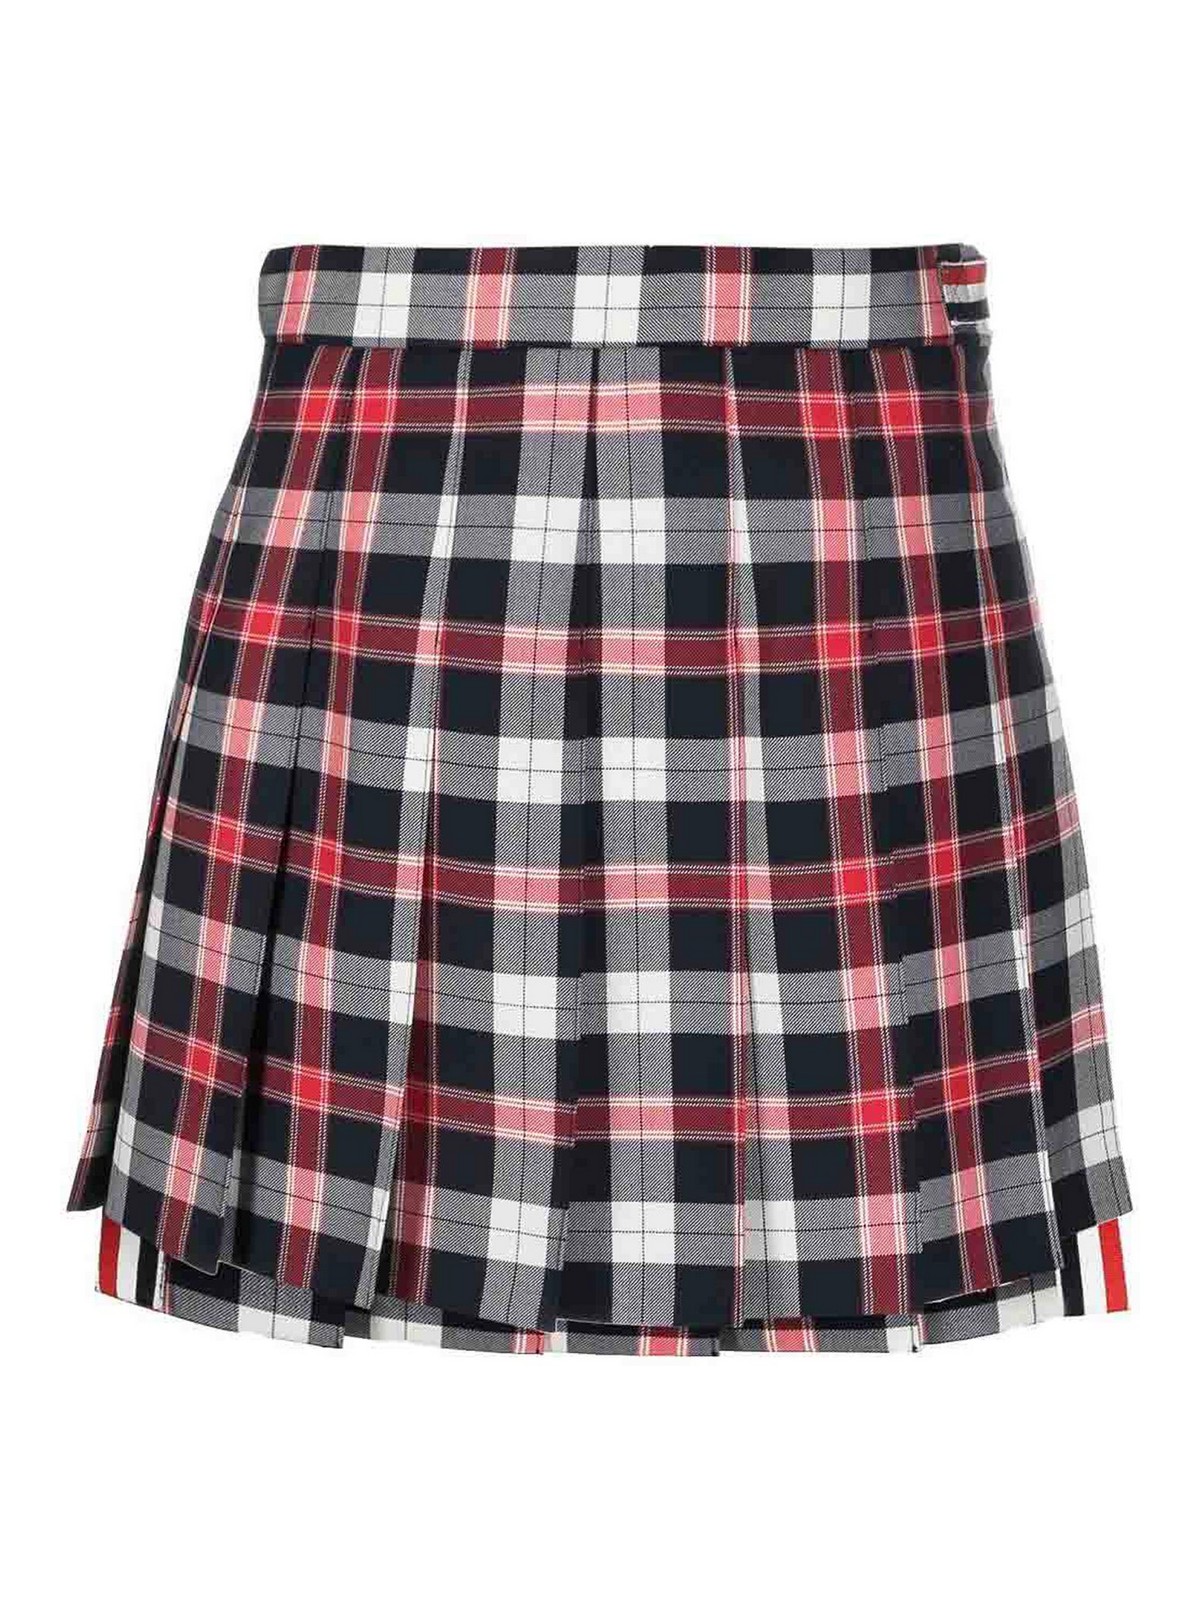 Thom Browne Tartan Twill Pleated Mini Skirt In Multi-colored